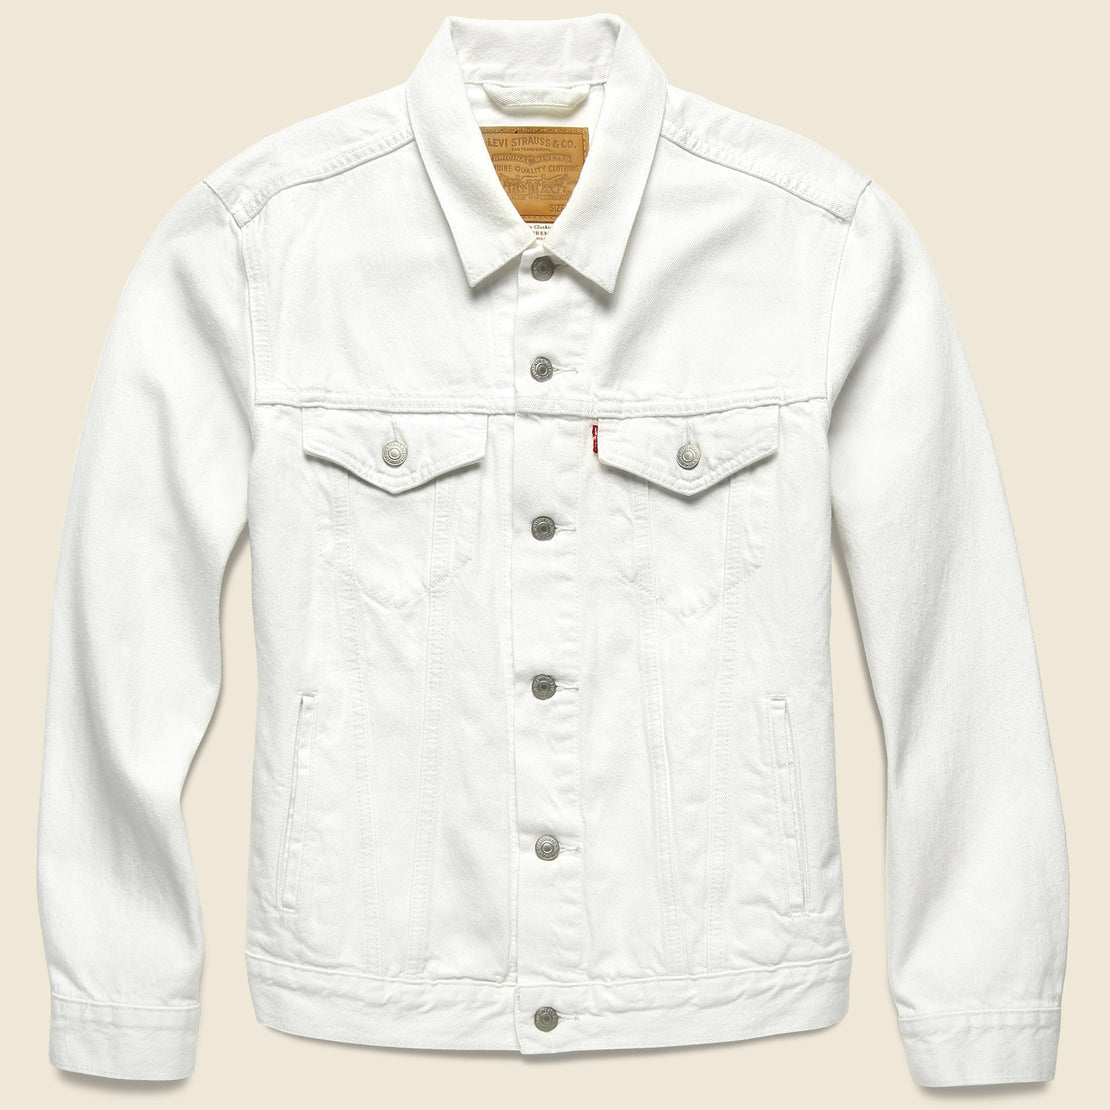 levis white trucker jacket